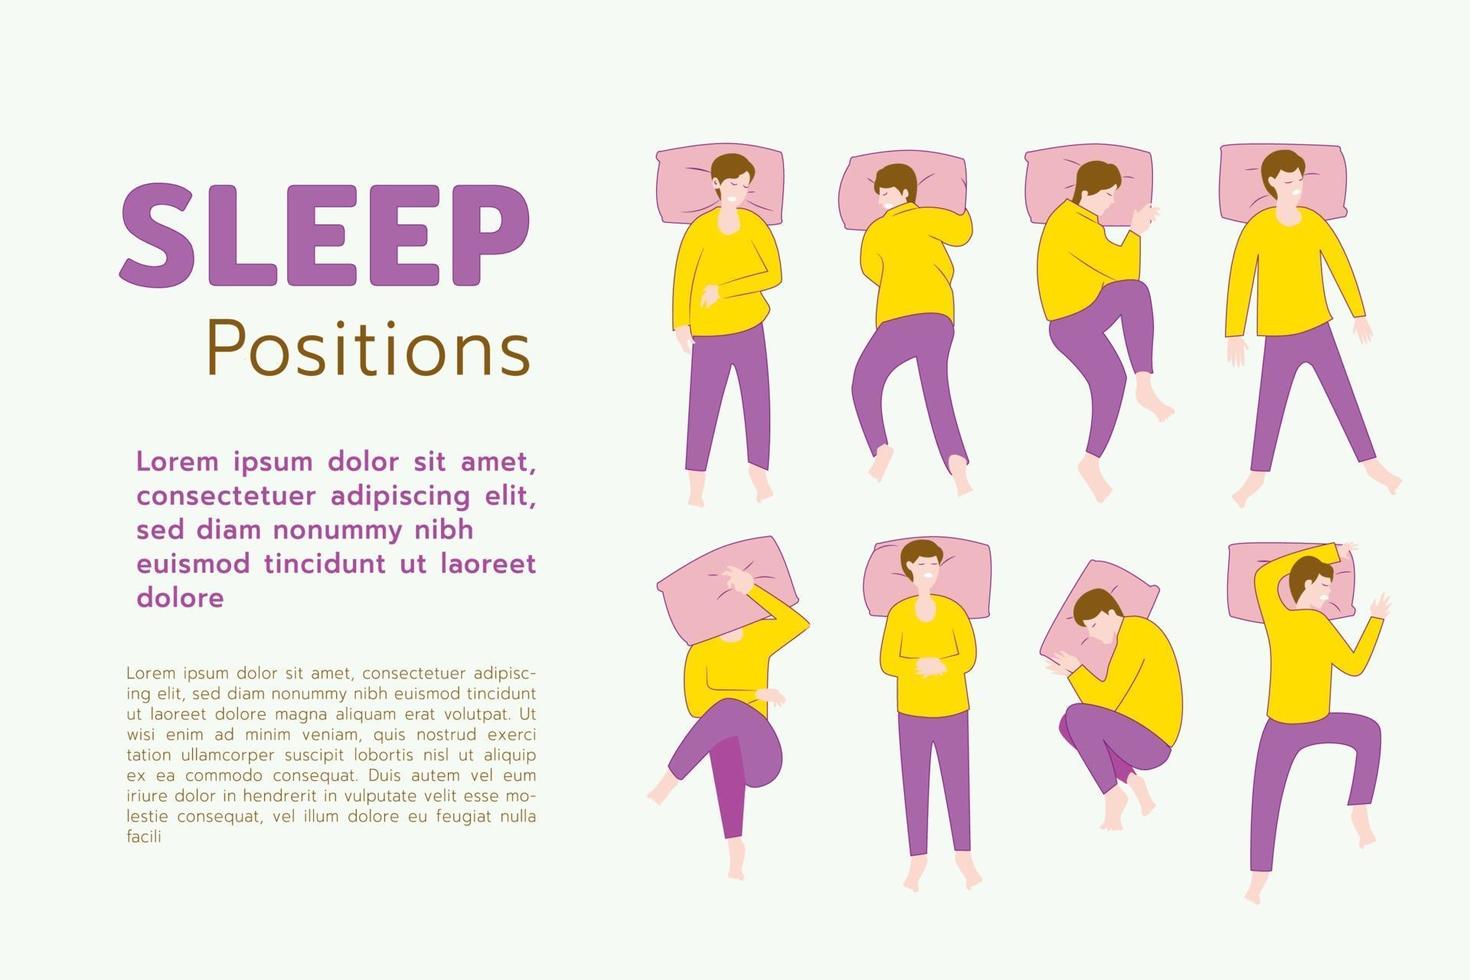 sömnpositioner för mänskliga, hur poserar mänskliga kan vara i sömntid, platt vektorillustration vektor